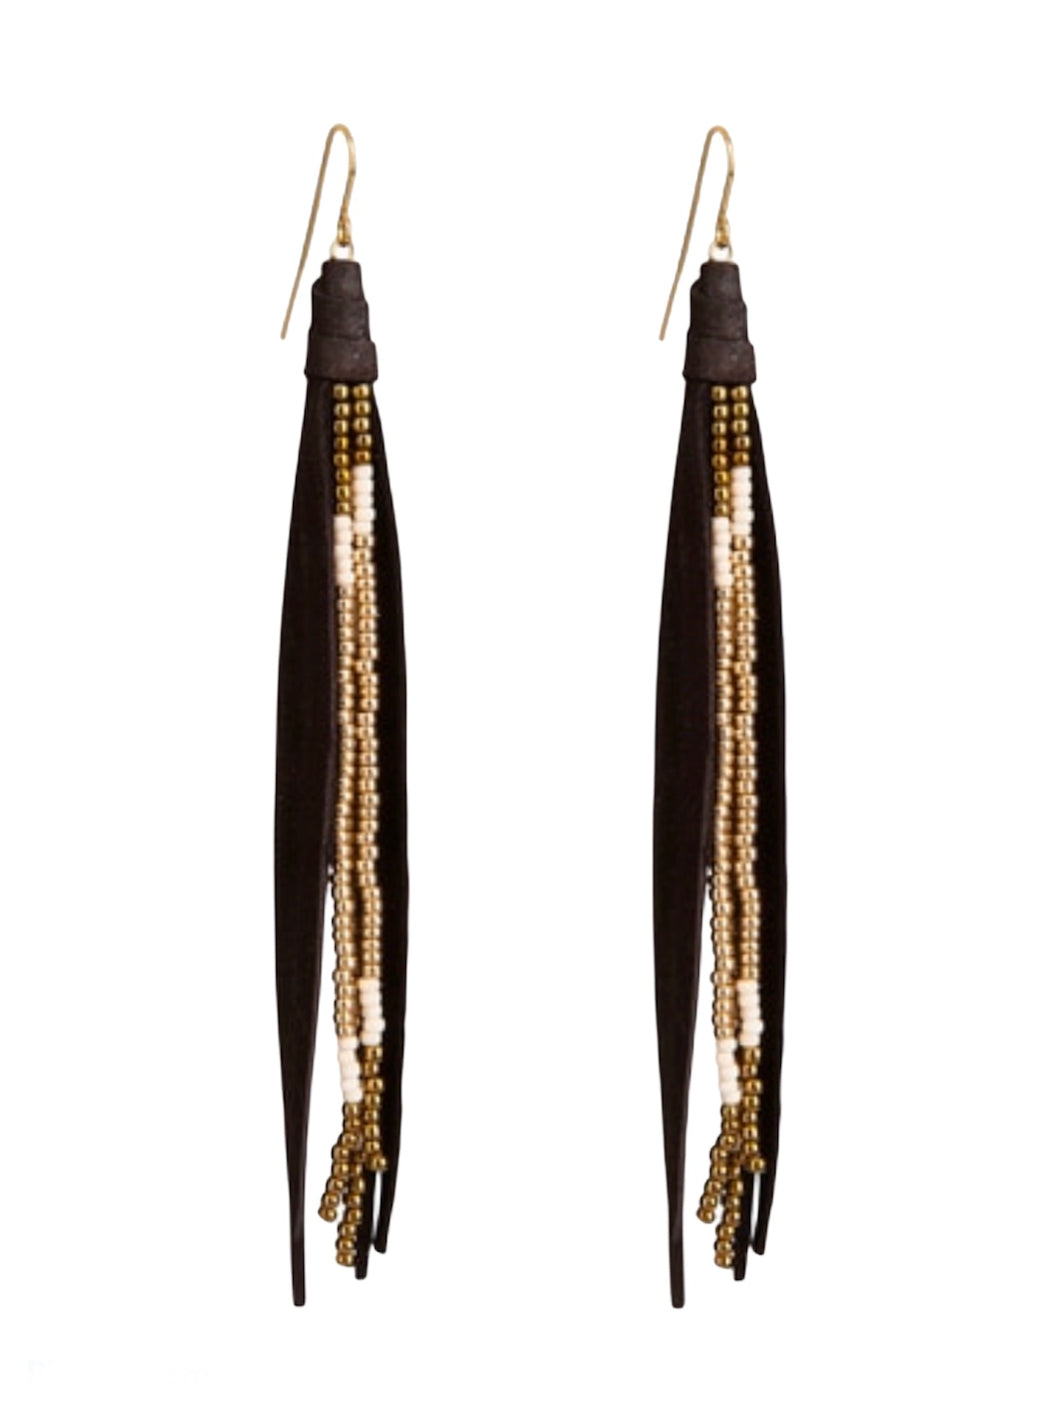 Western Tassel Earrings In Dark Brown and Gold